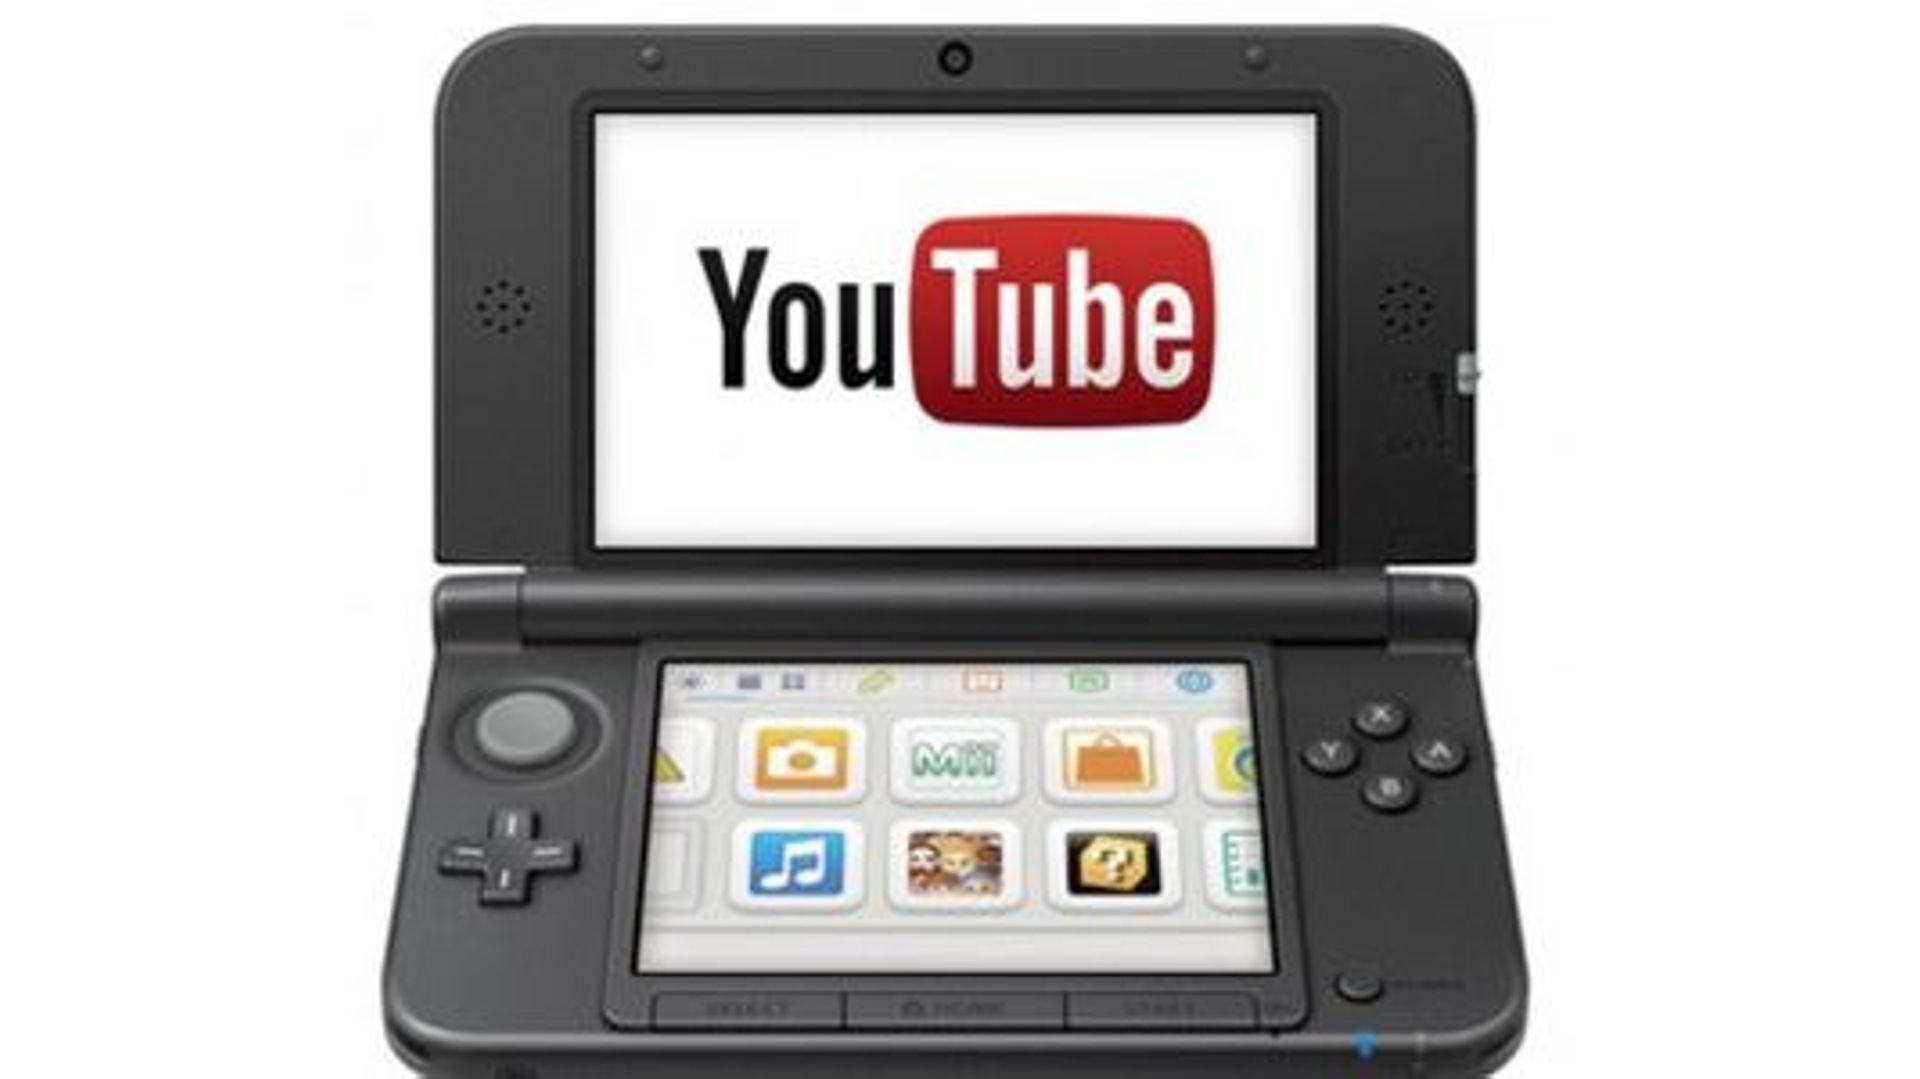 L'application YouTube de la Nintendo 3DS vit ses derniers jours